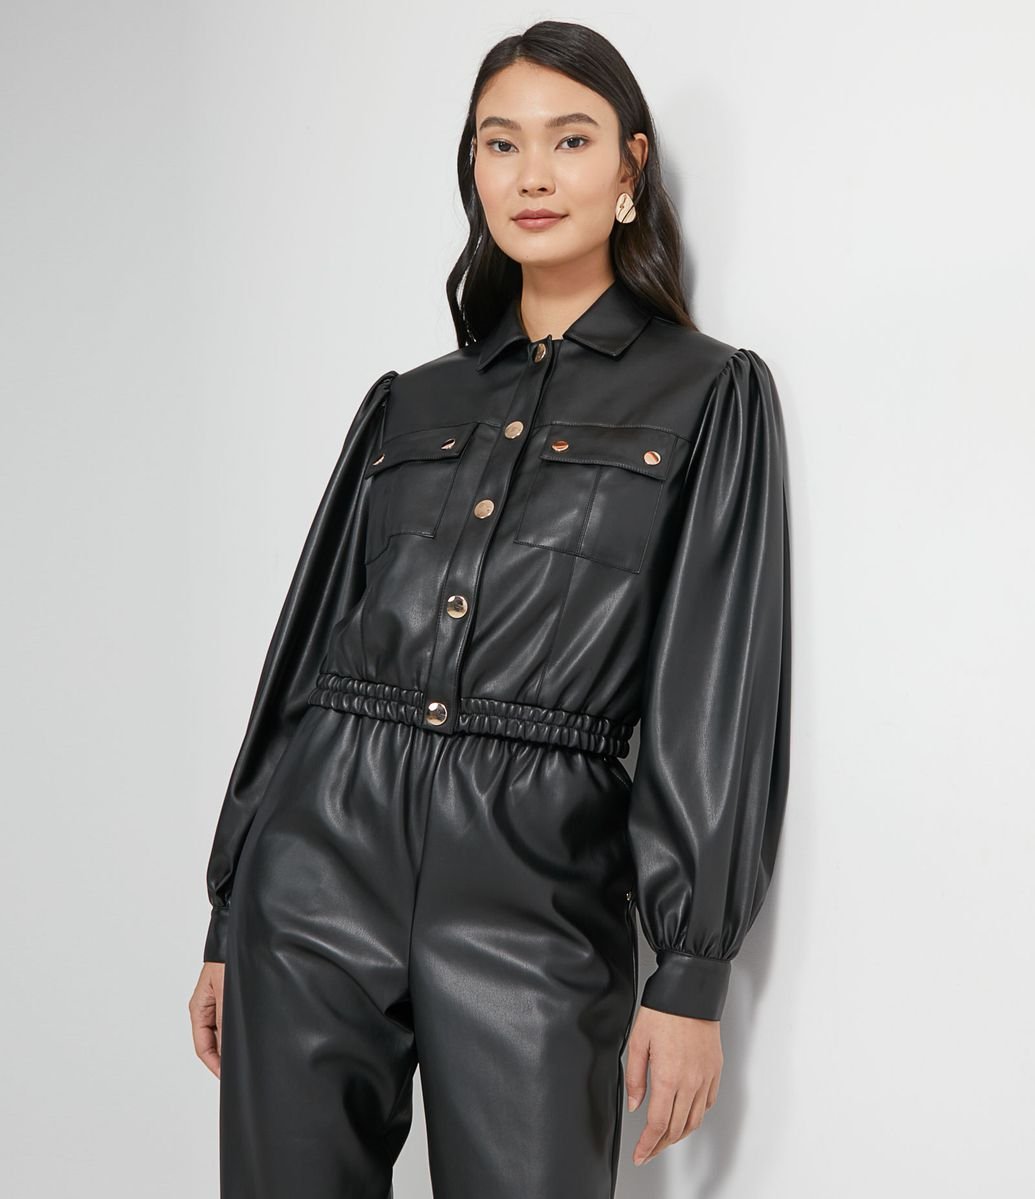 Jaqueta leve em material sintético com mangas bufantes e botões metalizados pretos